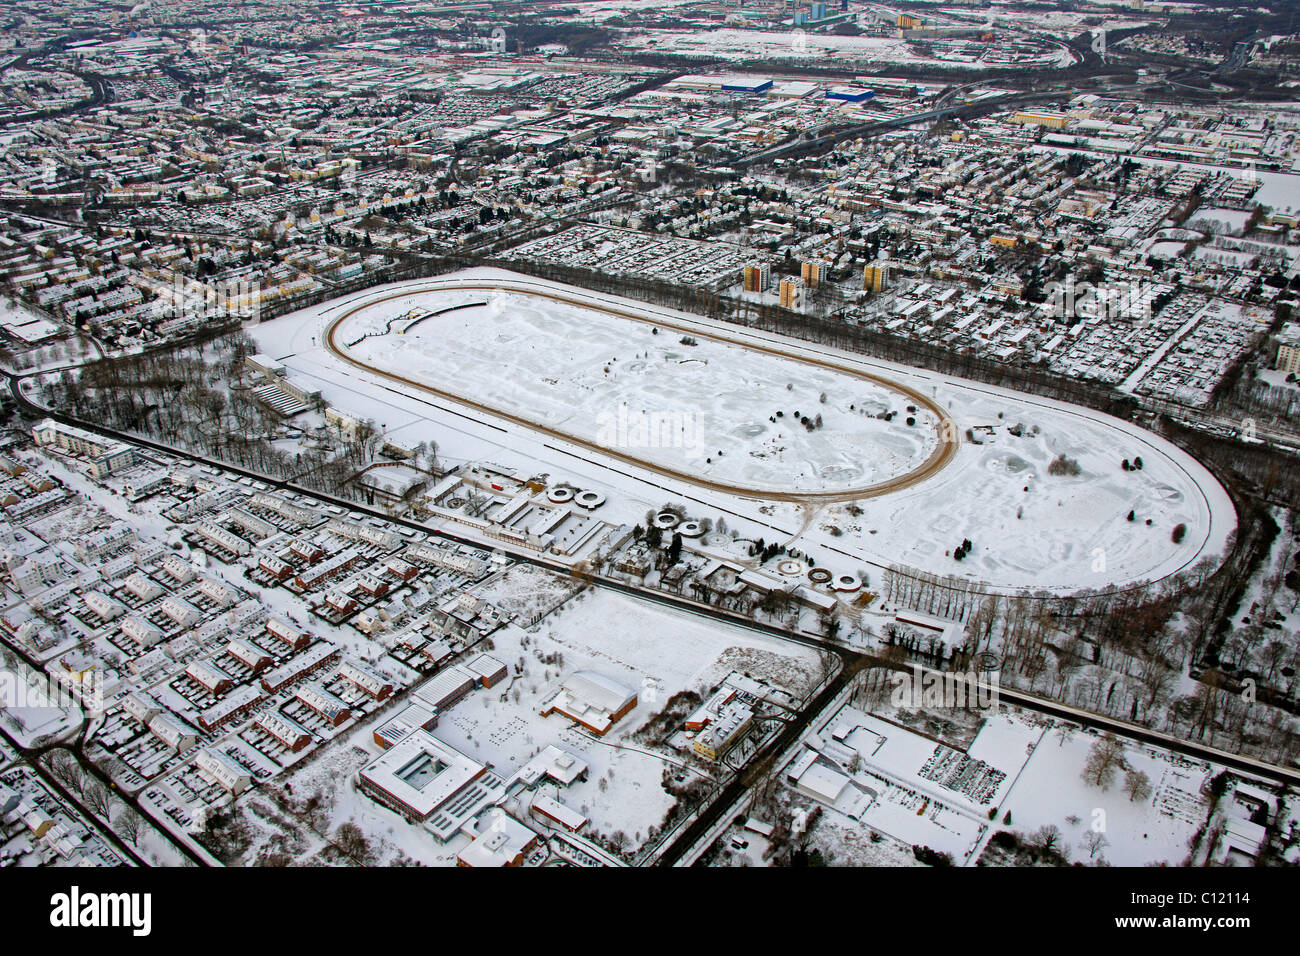 Aerial view, racecourse, racetrack Dortmund Wabel, Dortmund, Ruhrgebiet region, North Rhine-Westphalia, Germany, Europe Stock Photo